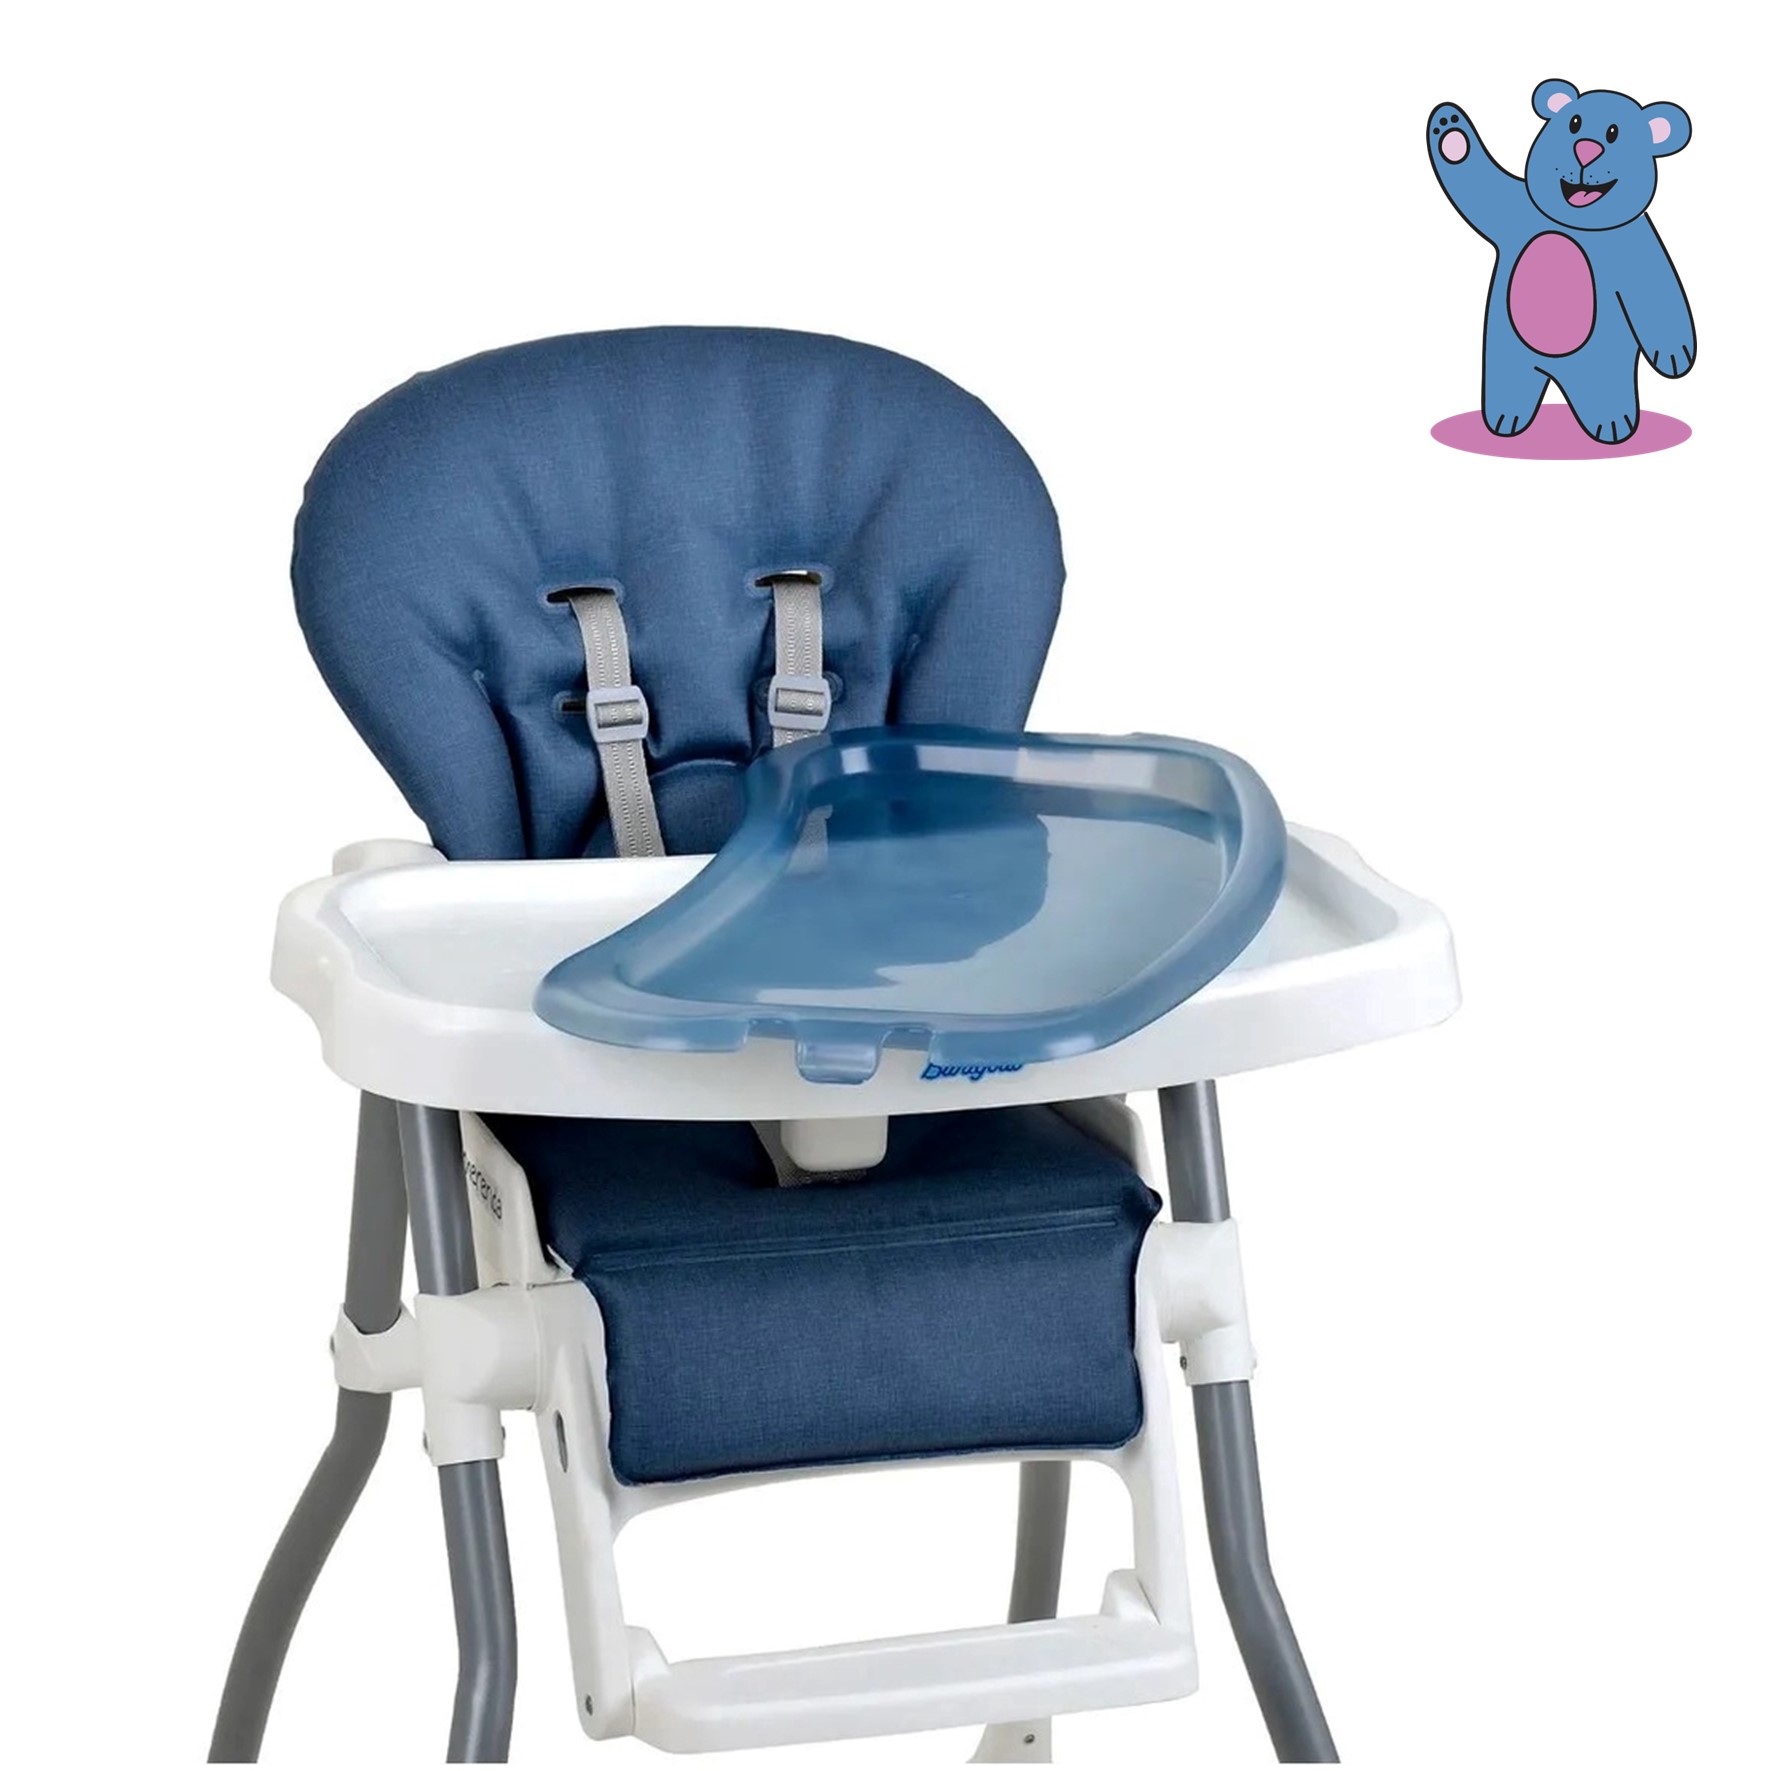 Cadeira de alimentação burigotto merenda mescla Azul